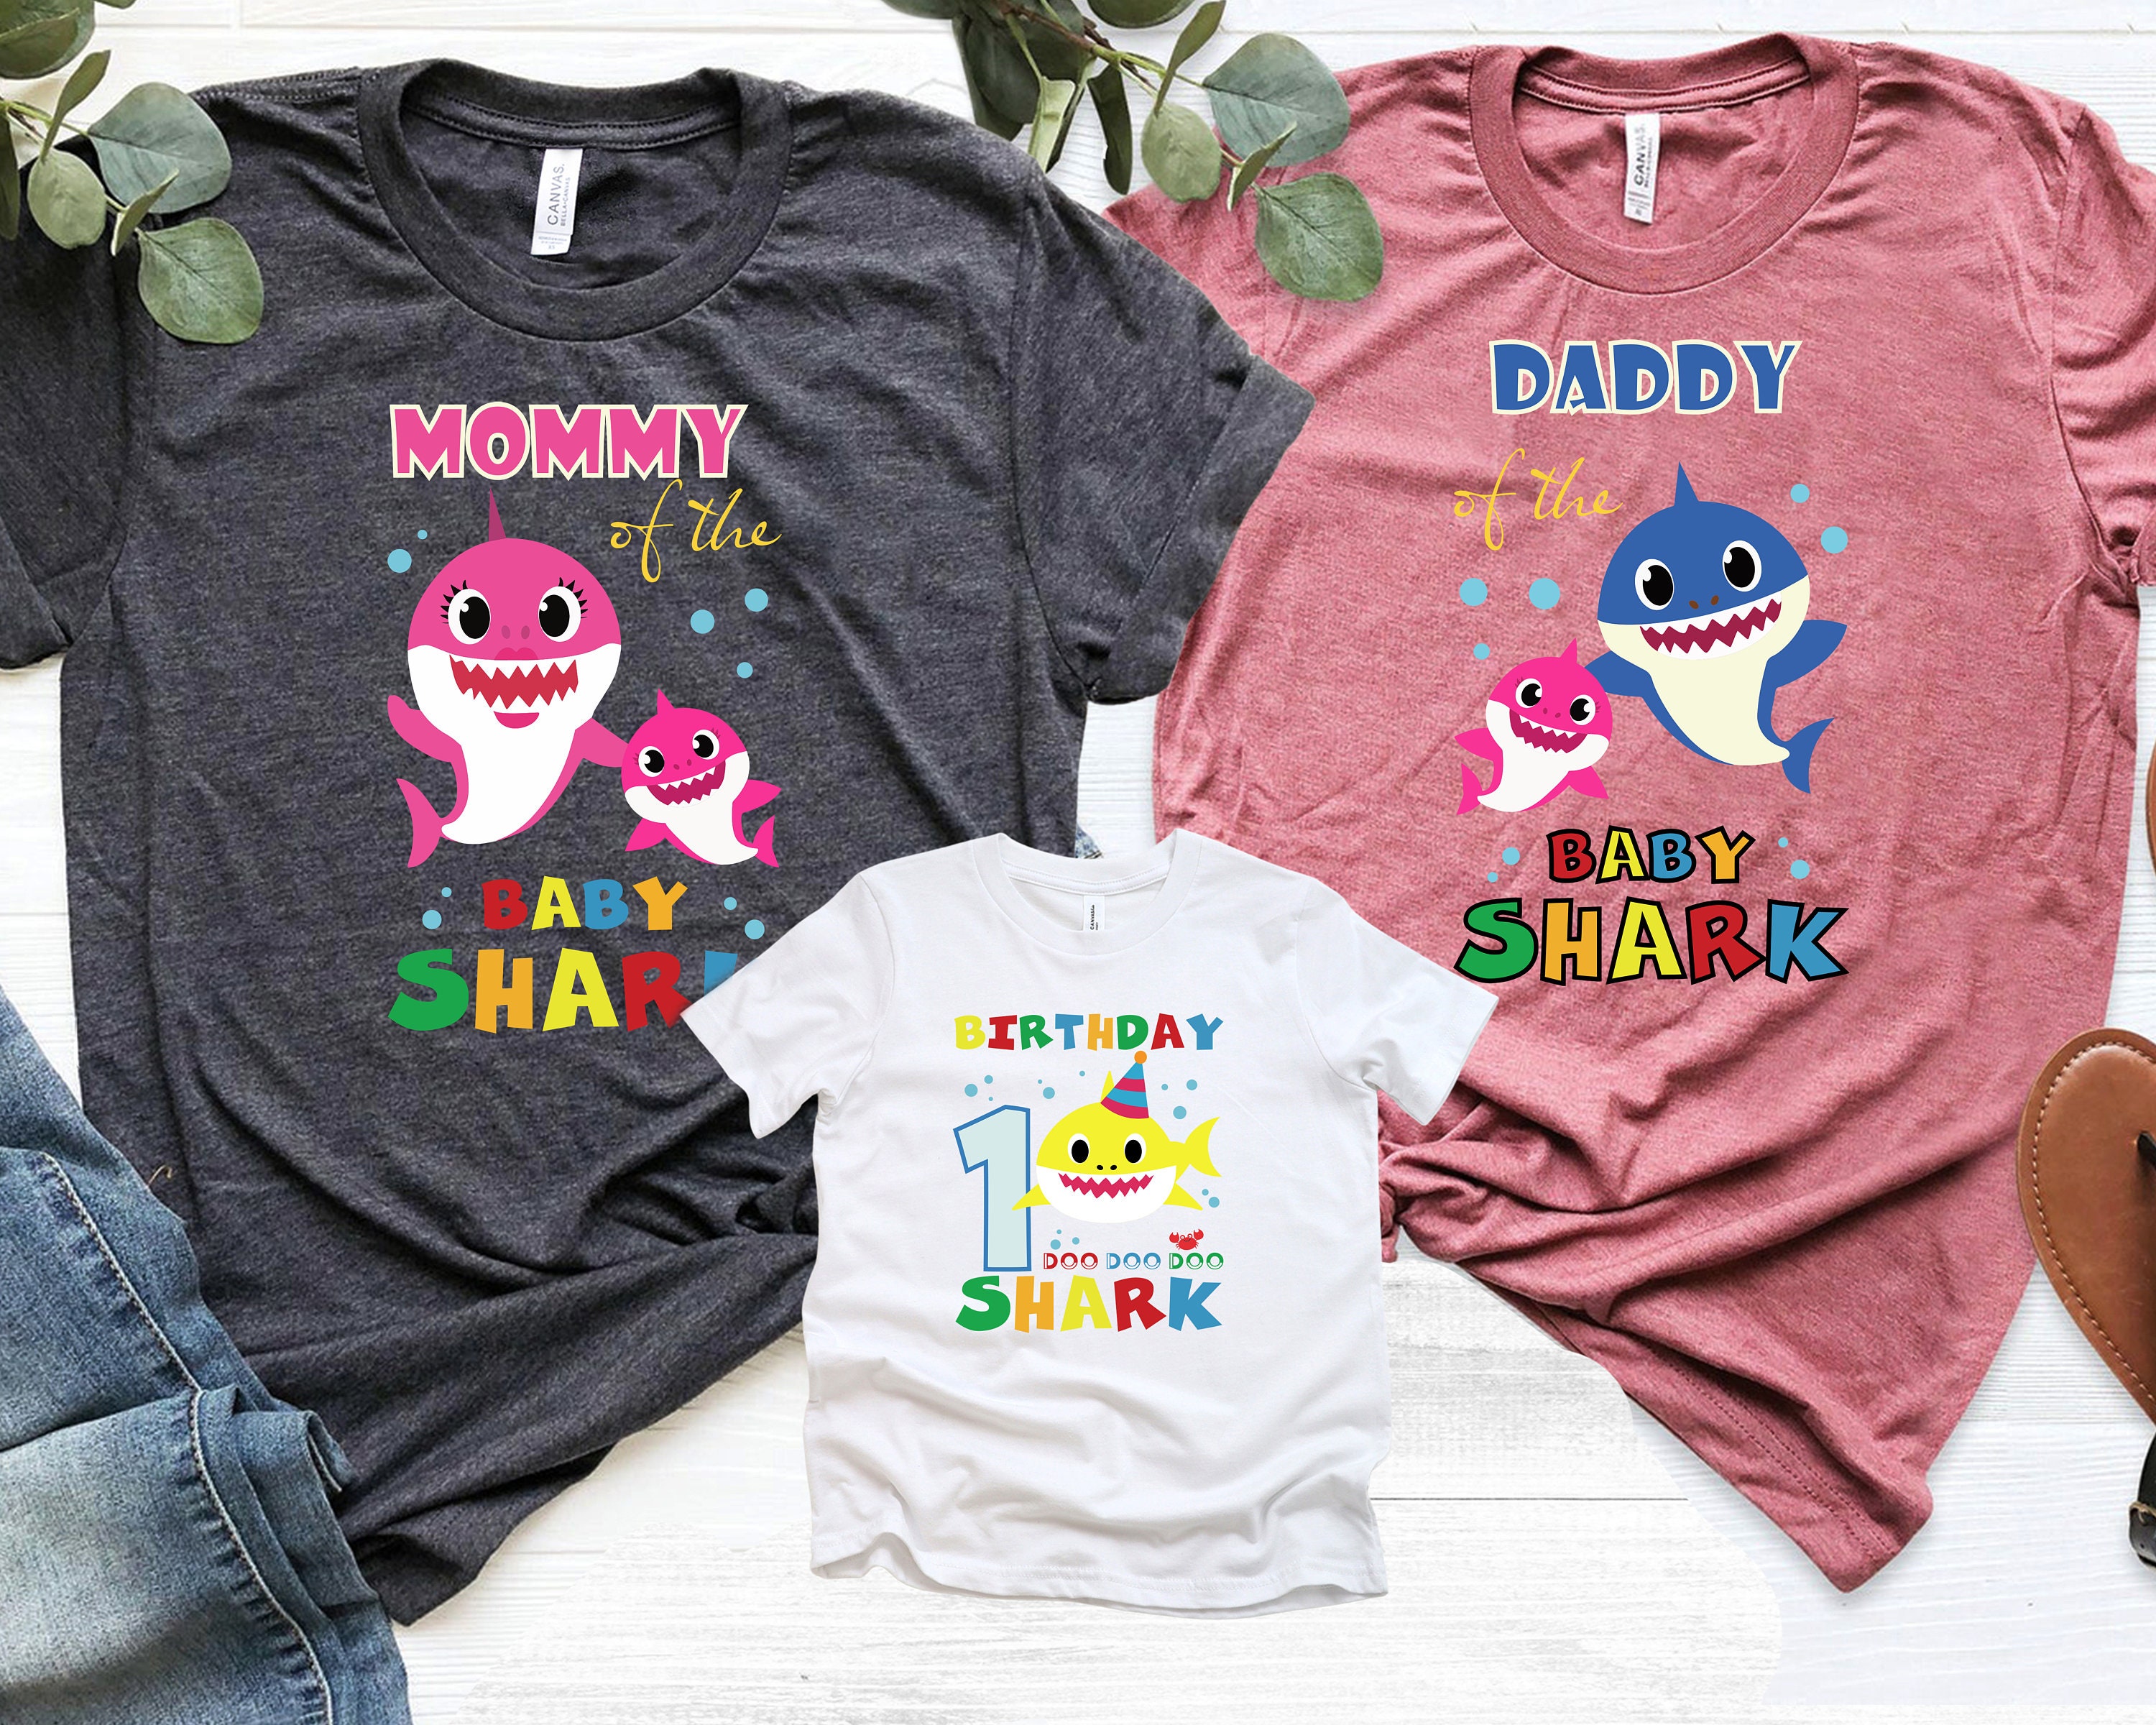 Baby Shark Family Shirts Custom Baby Shark Birthday Theme - Etsy